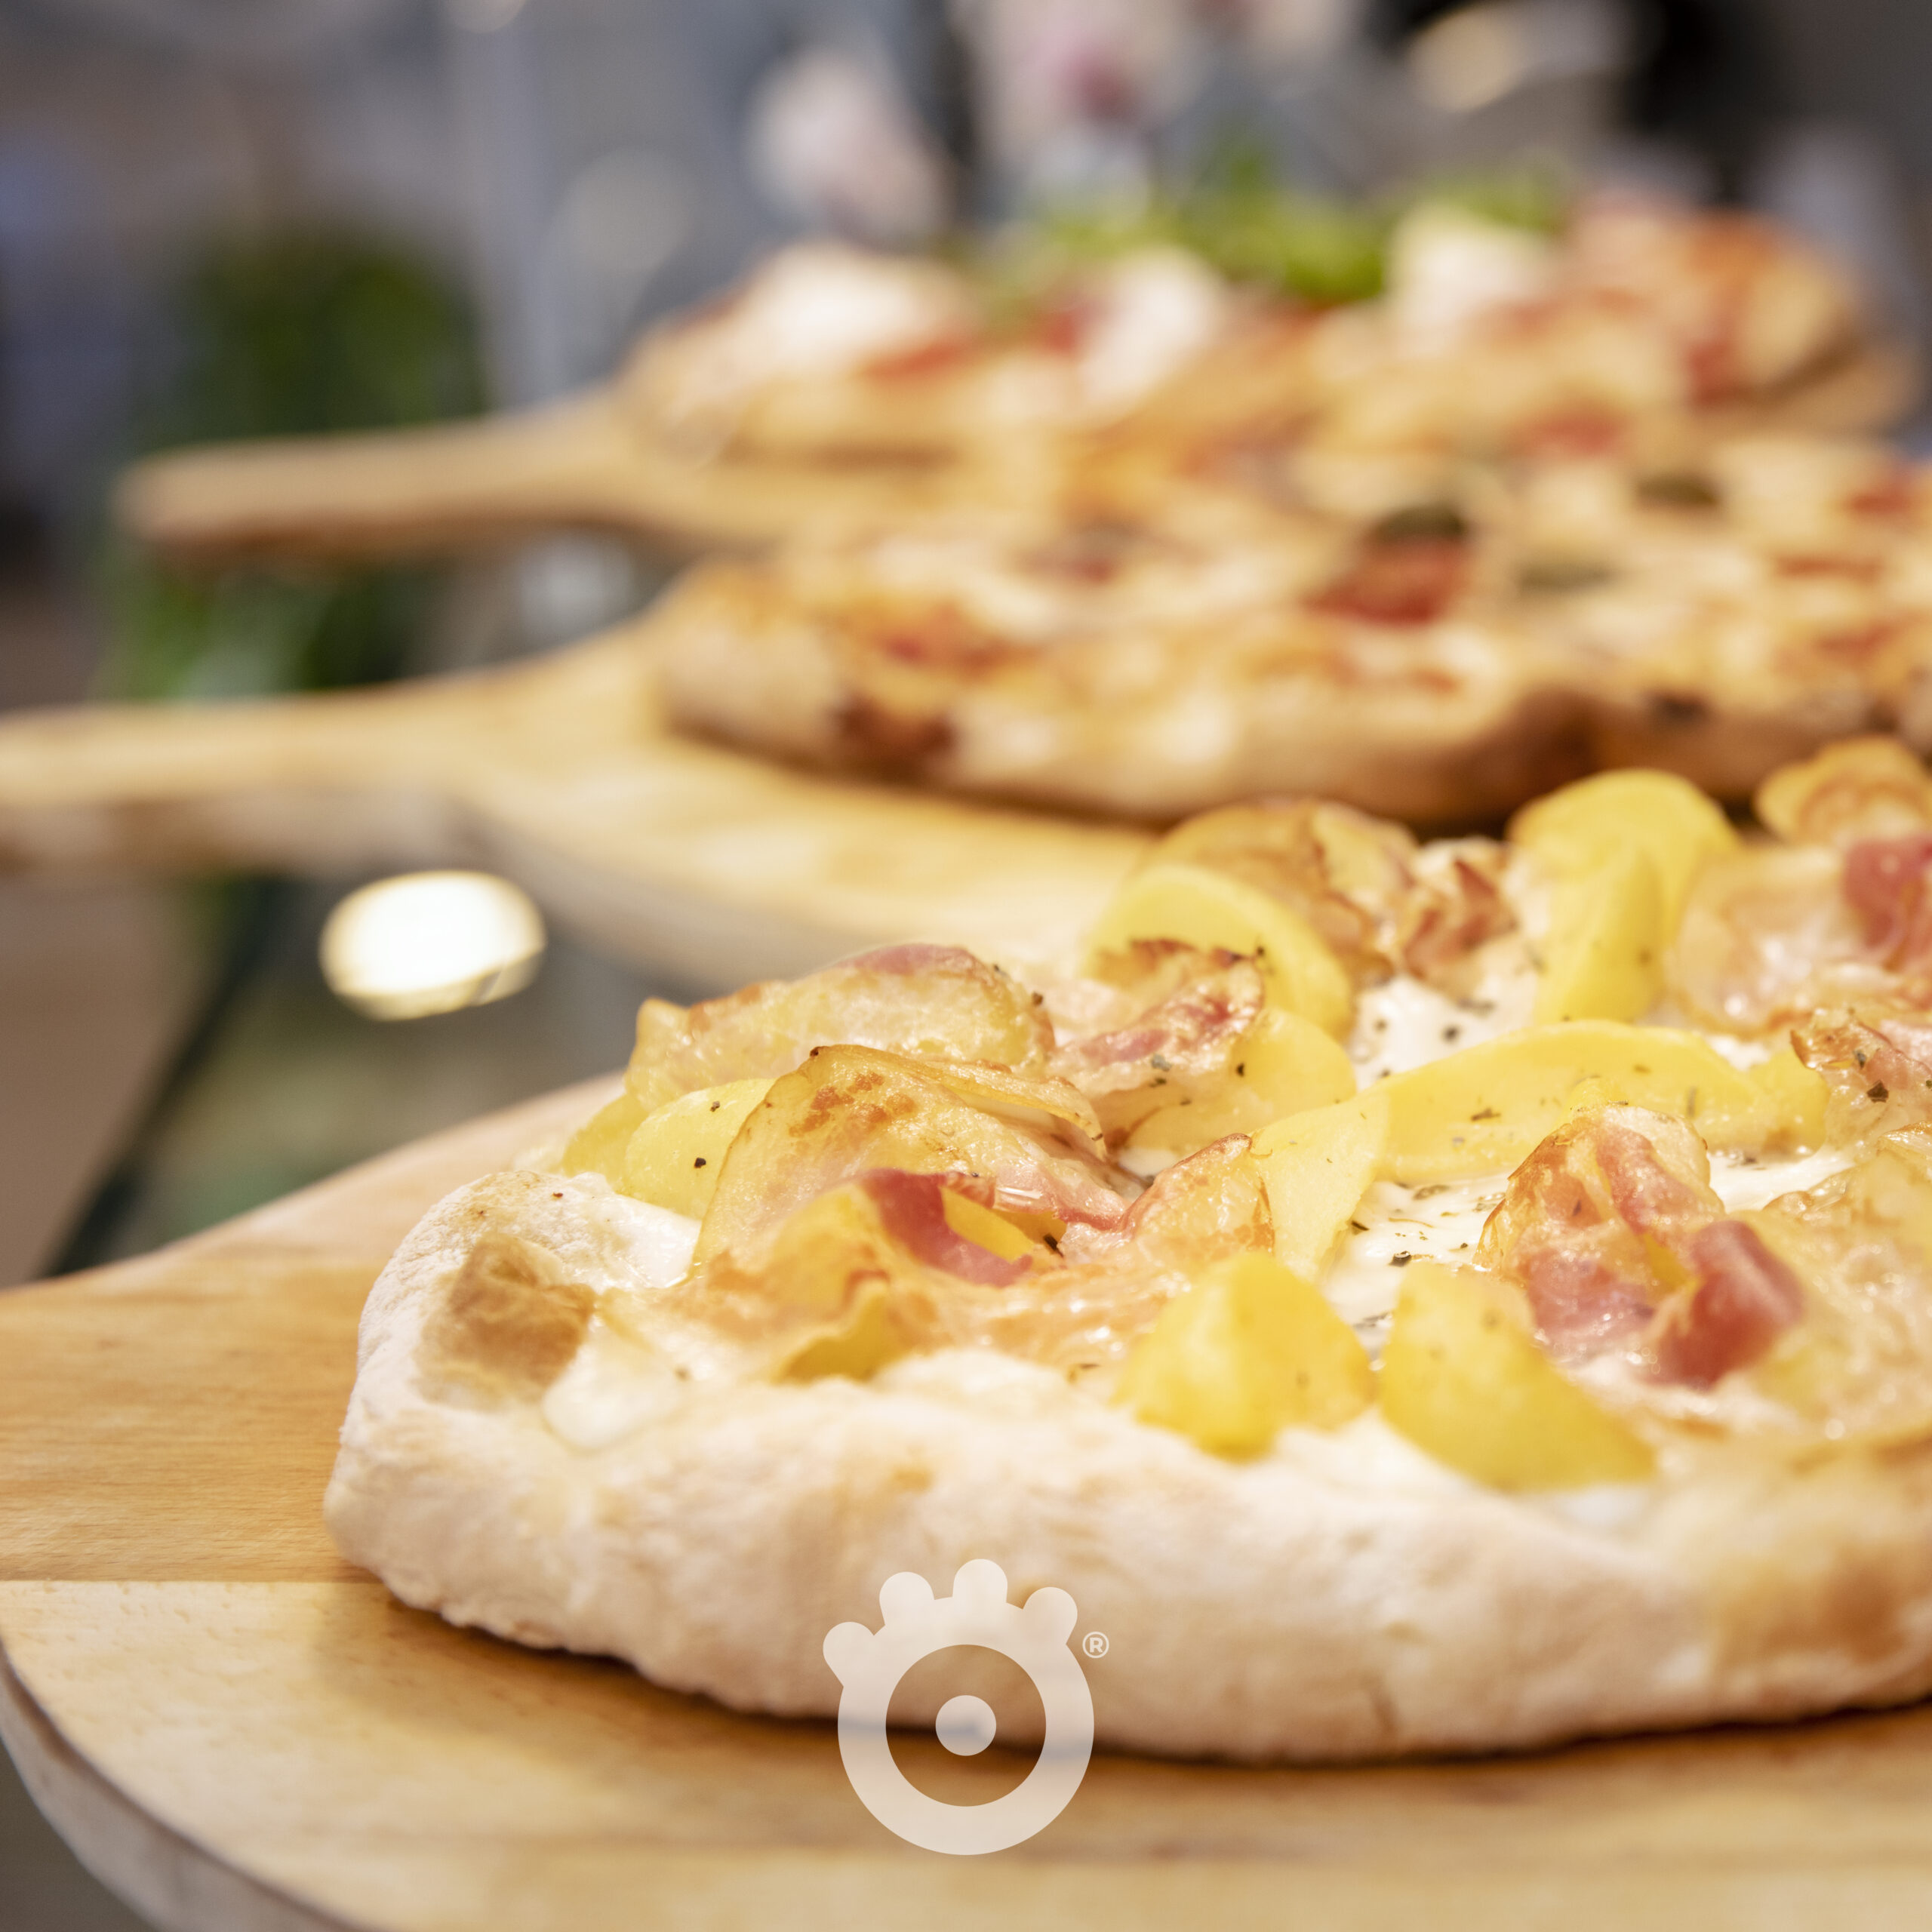 Pizza patate, mozzarella e guanciale croccante - Food photography